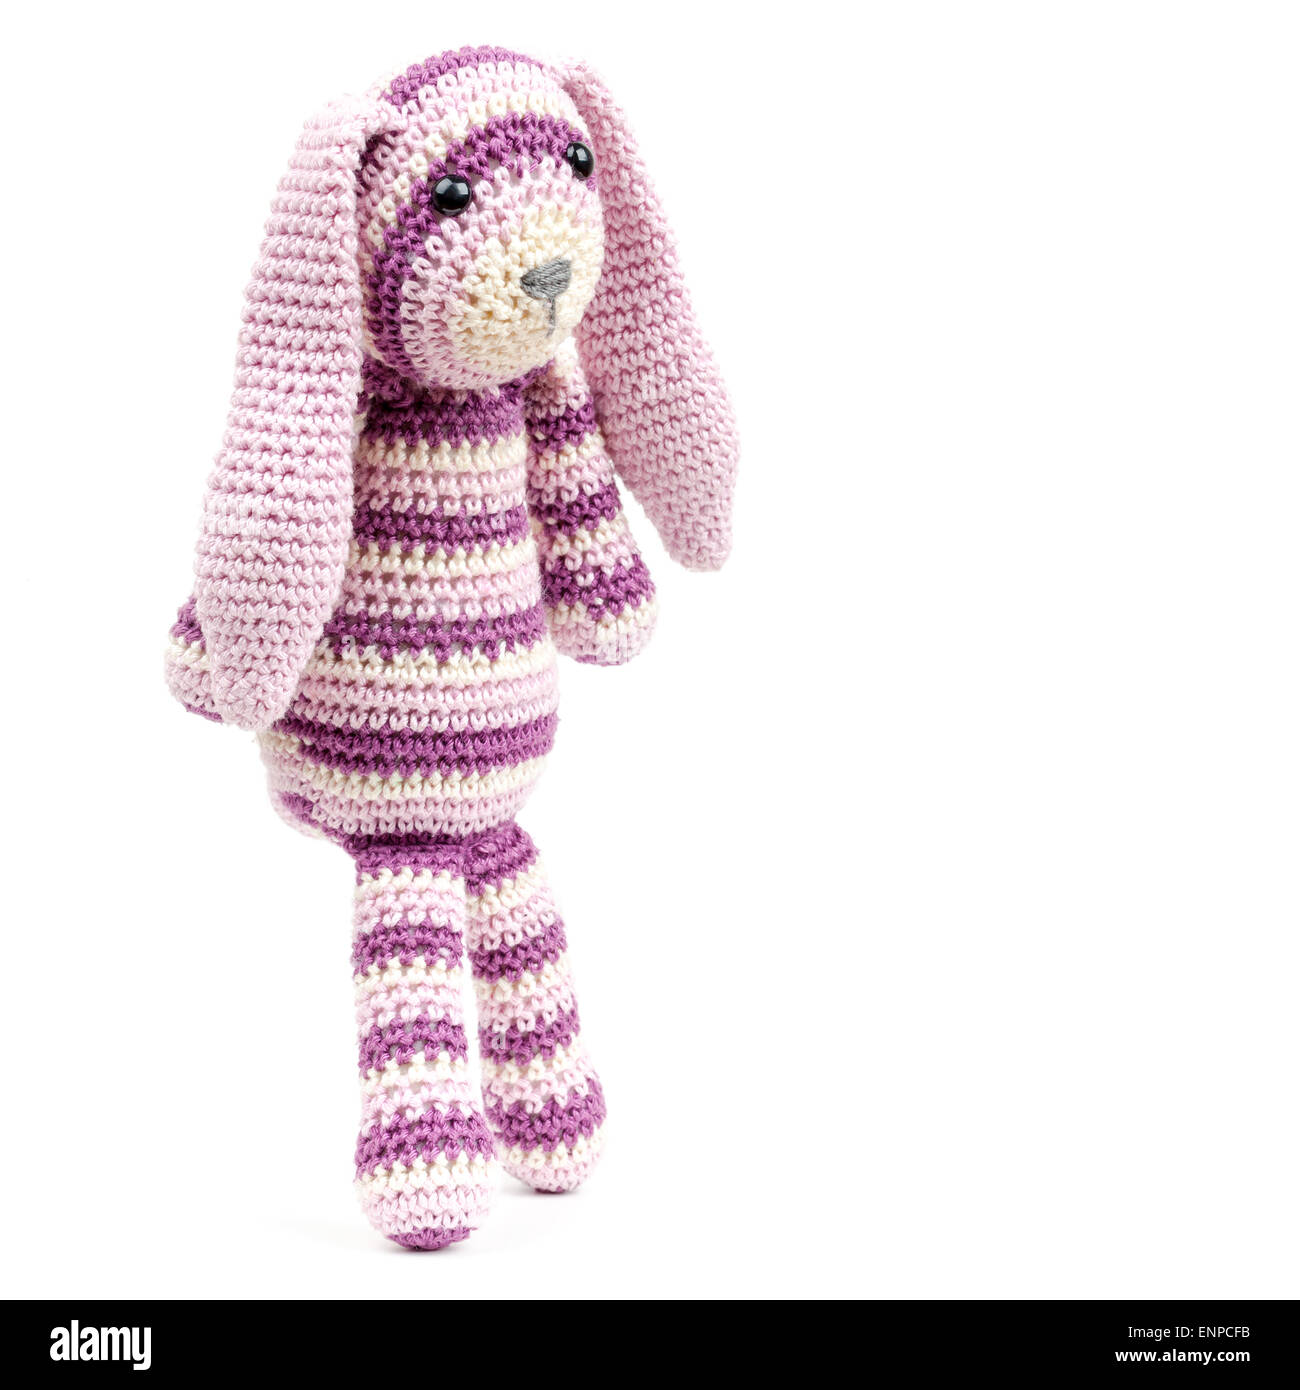 Funny a maglia giocattolo di coniglio isolato su sfondo bianco con ombra morbida Foto Stock